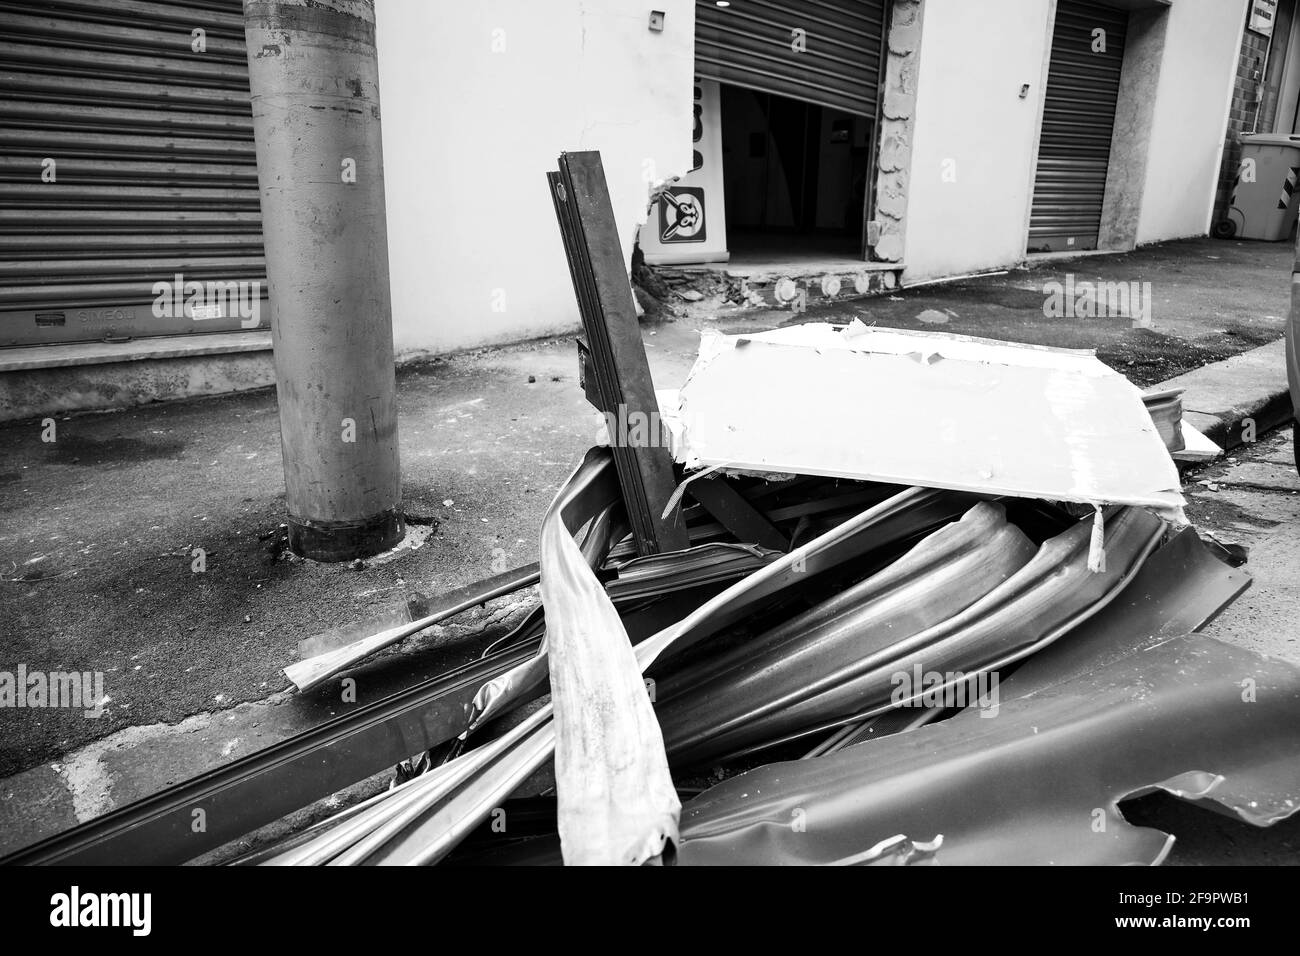 Naples, ITALIE. 19 avril 2020. 20/04/2021 Naples, ce soir malgré un couvre-feu, la Camorra pour extorsion fait exploser un magasin dans les collines Aminei crédit: Fabio Sasso/ZUMA Wire/Alay Live News Banque D'Images